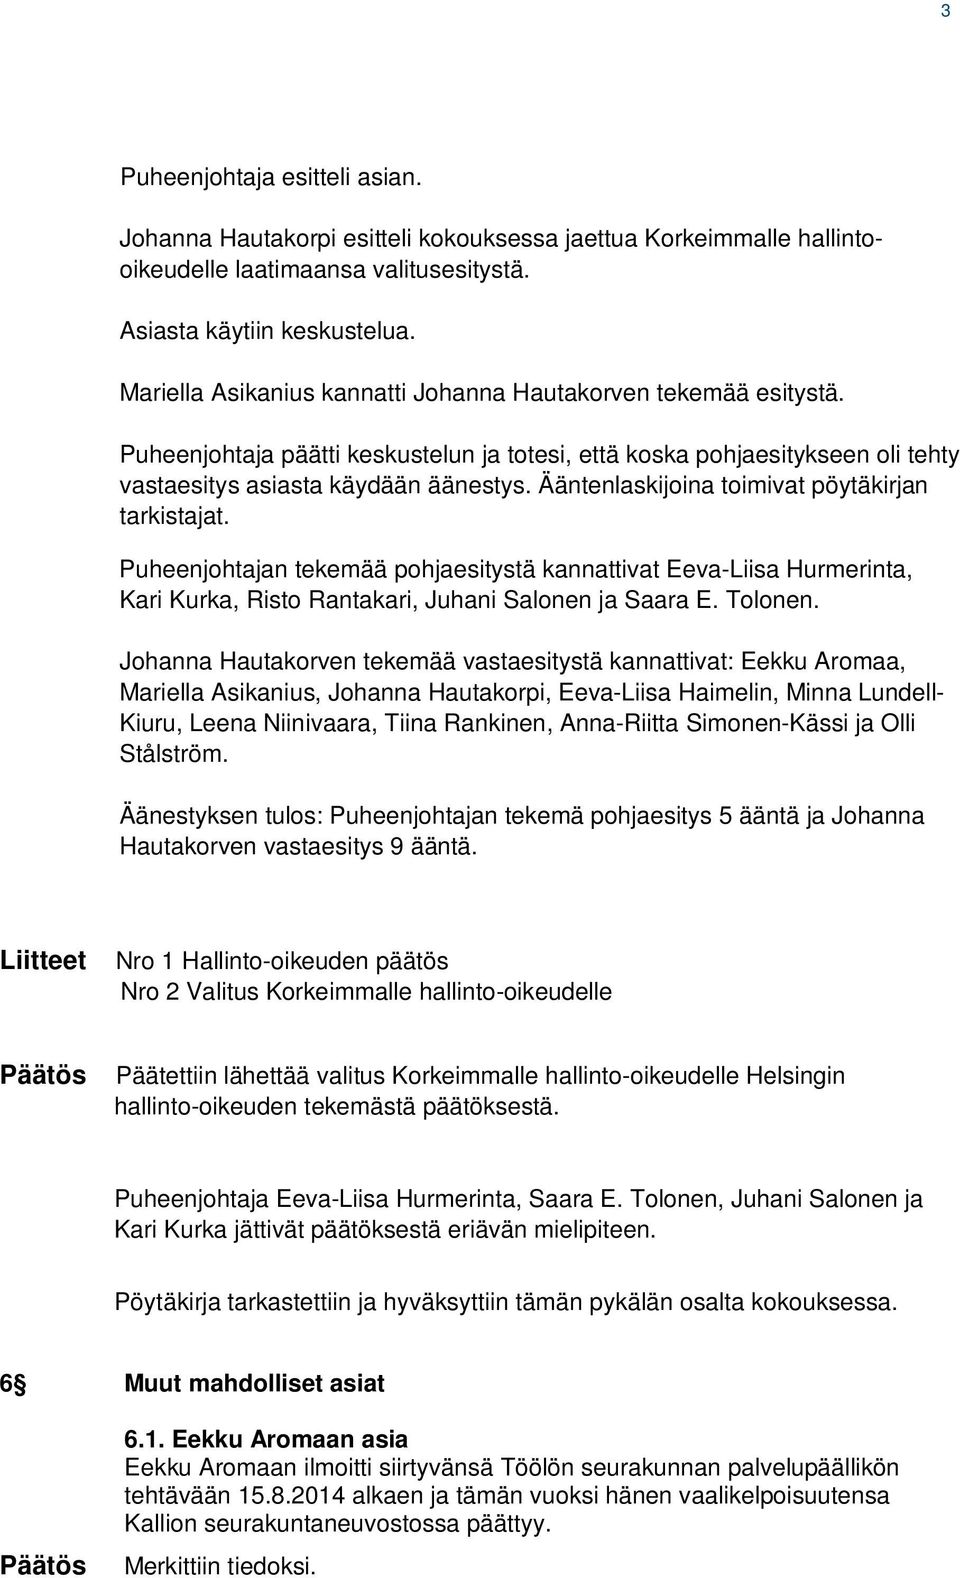 Ääntenlaskijoina toimivat pöytäkirjan tarkistajat. Puheenjohtajan tekemää pohjaesitystä kannattivat Eeva-Liisa Hurmerinta, Kari Kurka, Risto Rantakari, Juhani Salonen ja Saara E. Tolonen.